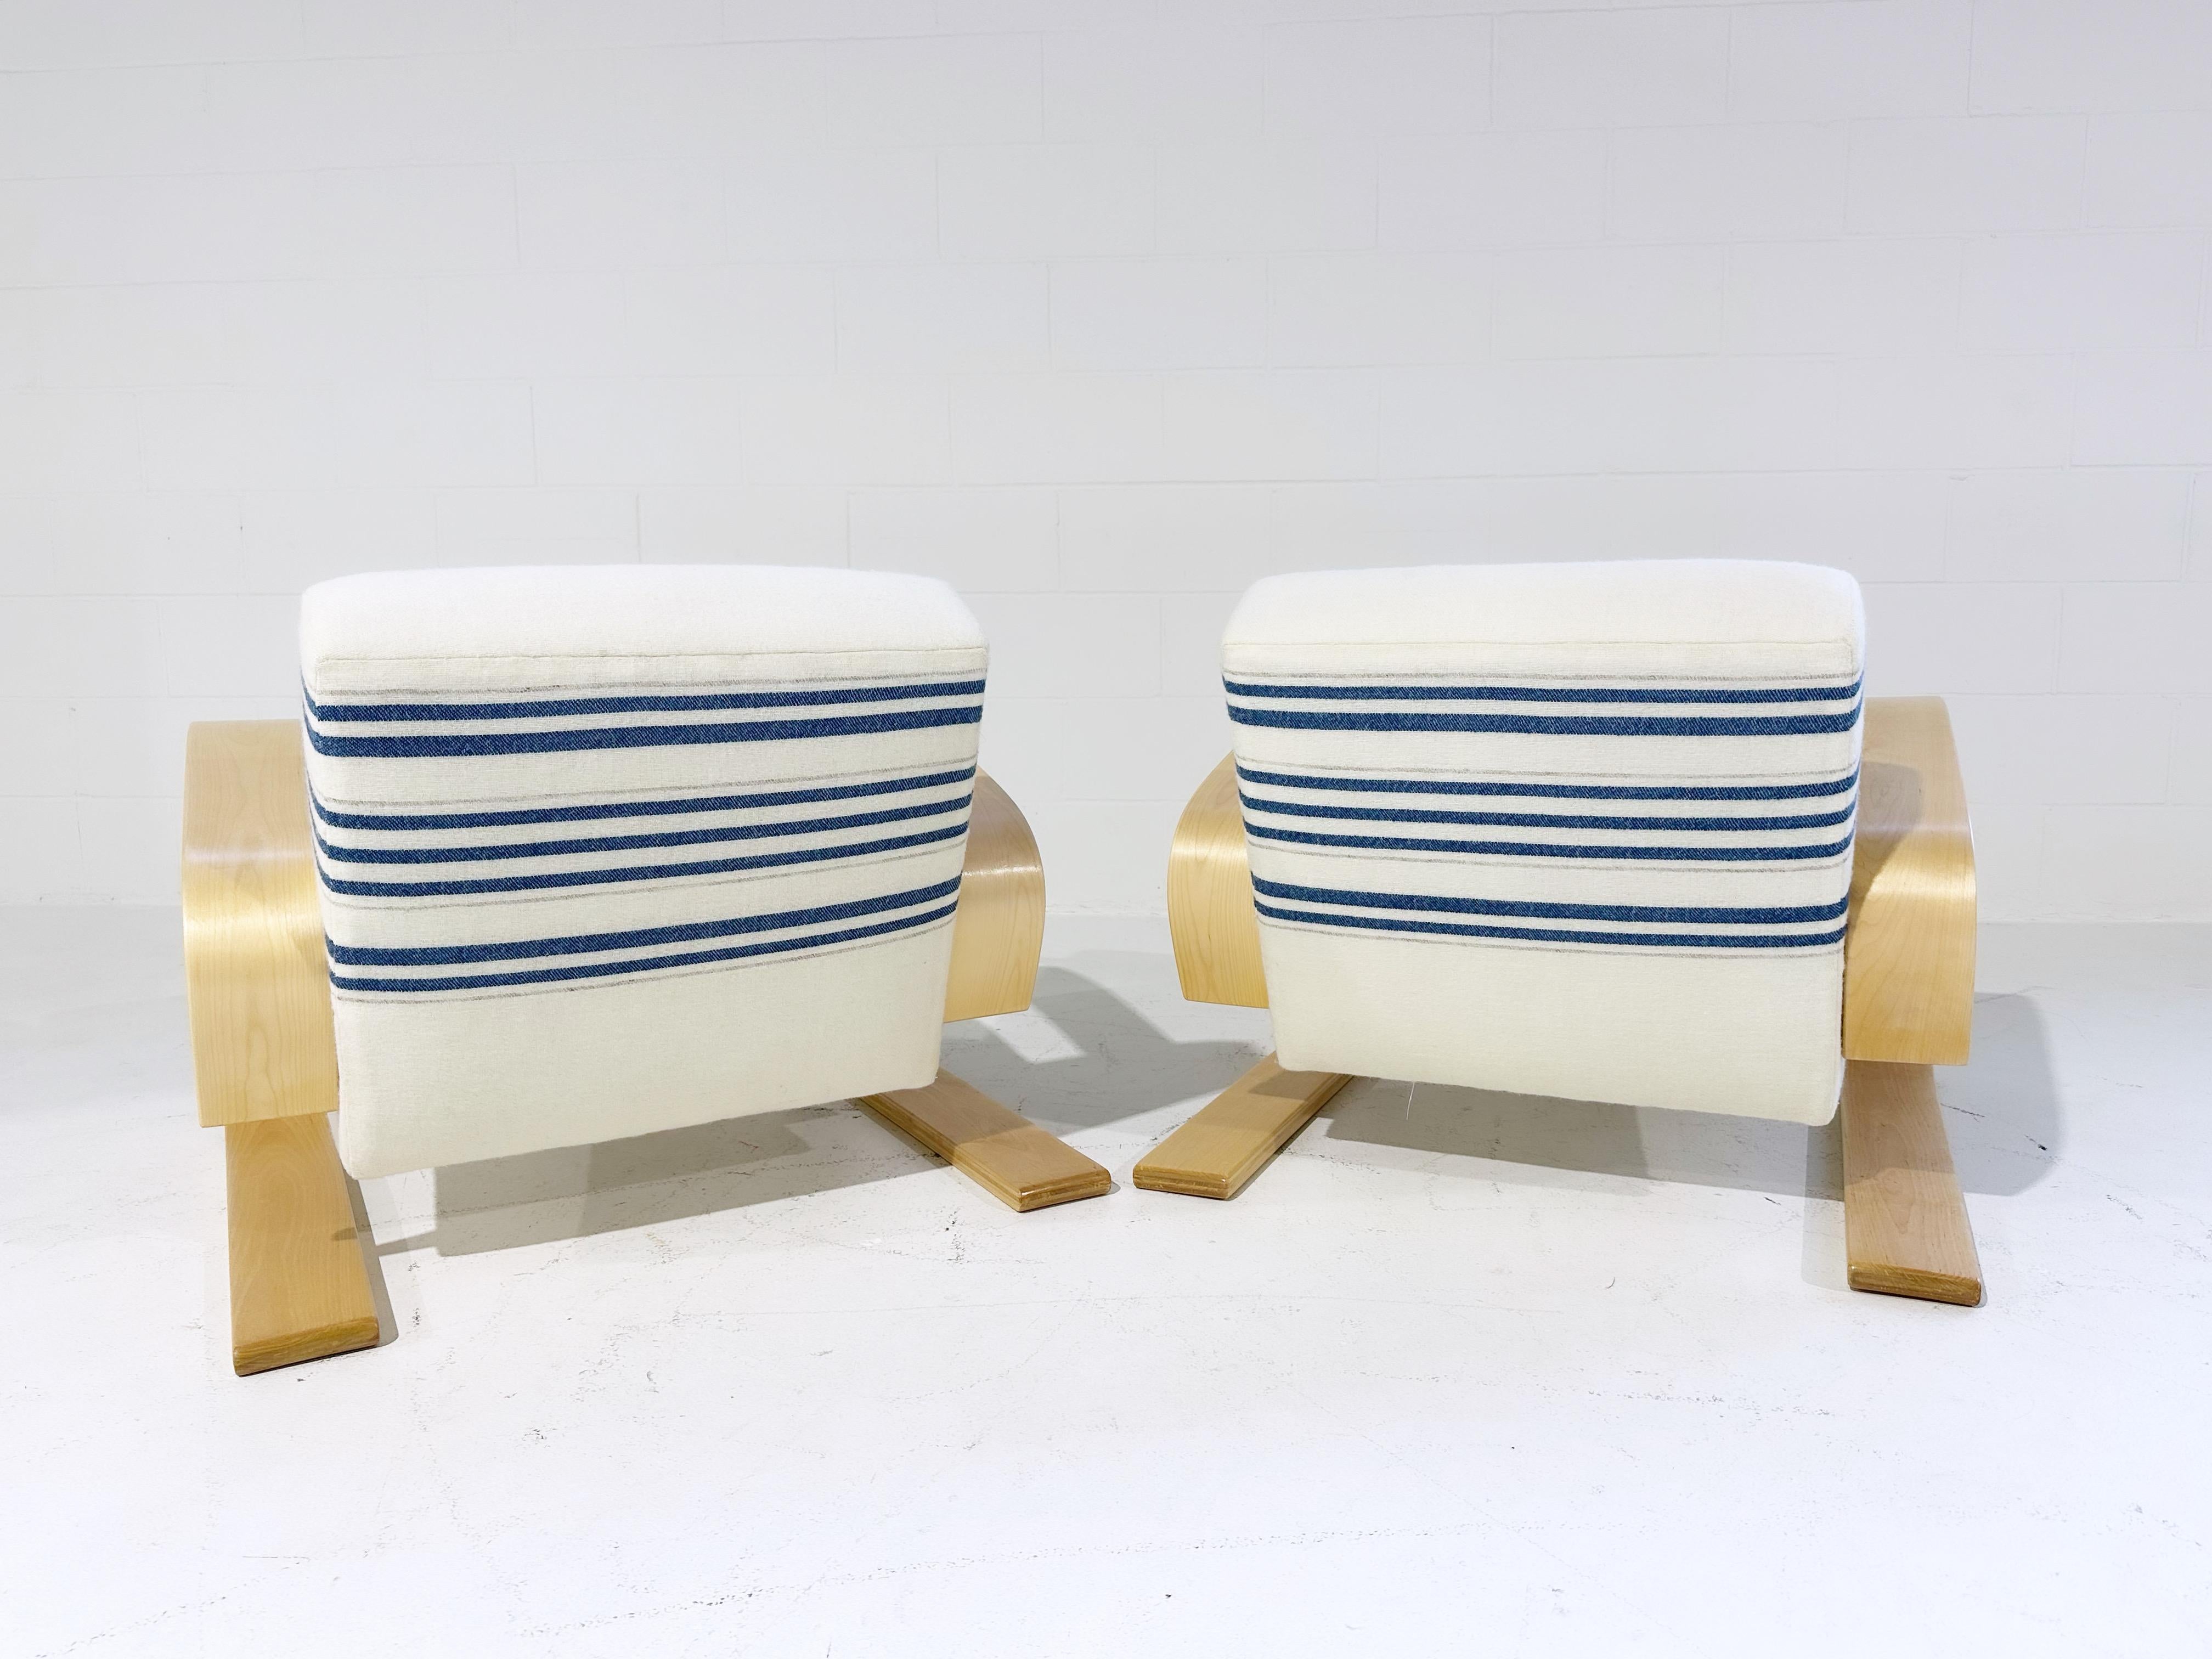 Une magnifique paire de fauteuils Tank uniques en leur genre, restaurés de main de maître dans des couvertures tissées à la main par Swans Island Company, l'atelier de textile et de couvertures basé dans le Maine.

Le fauteuil 400 ou 